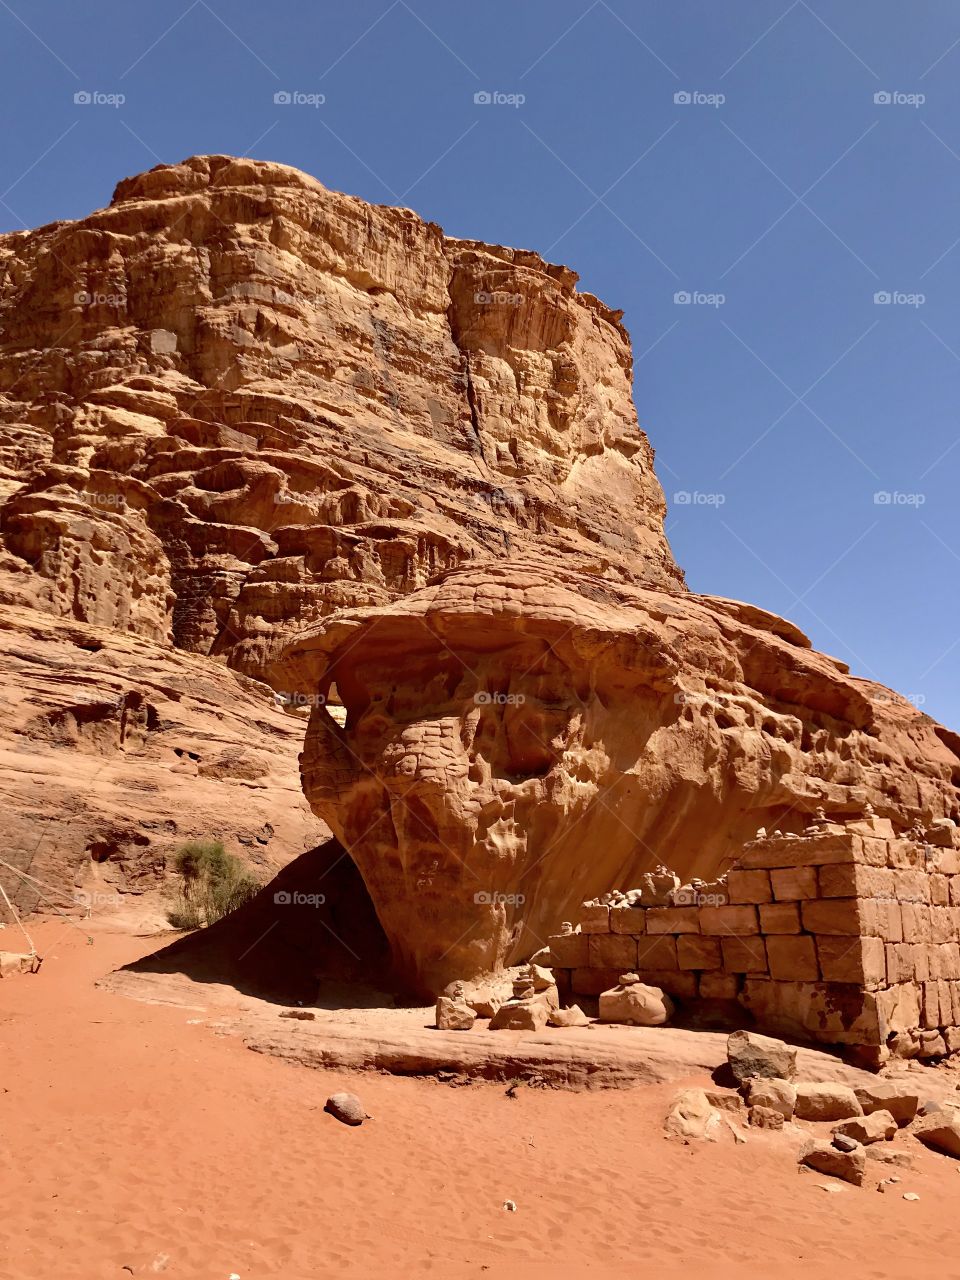 Stone skull. Wadi rum desert